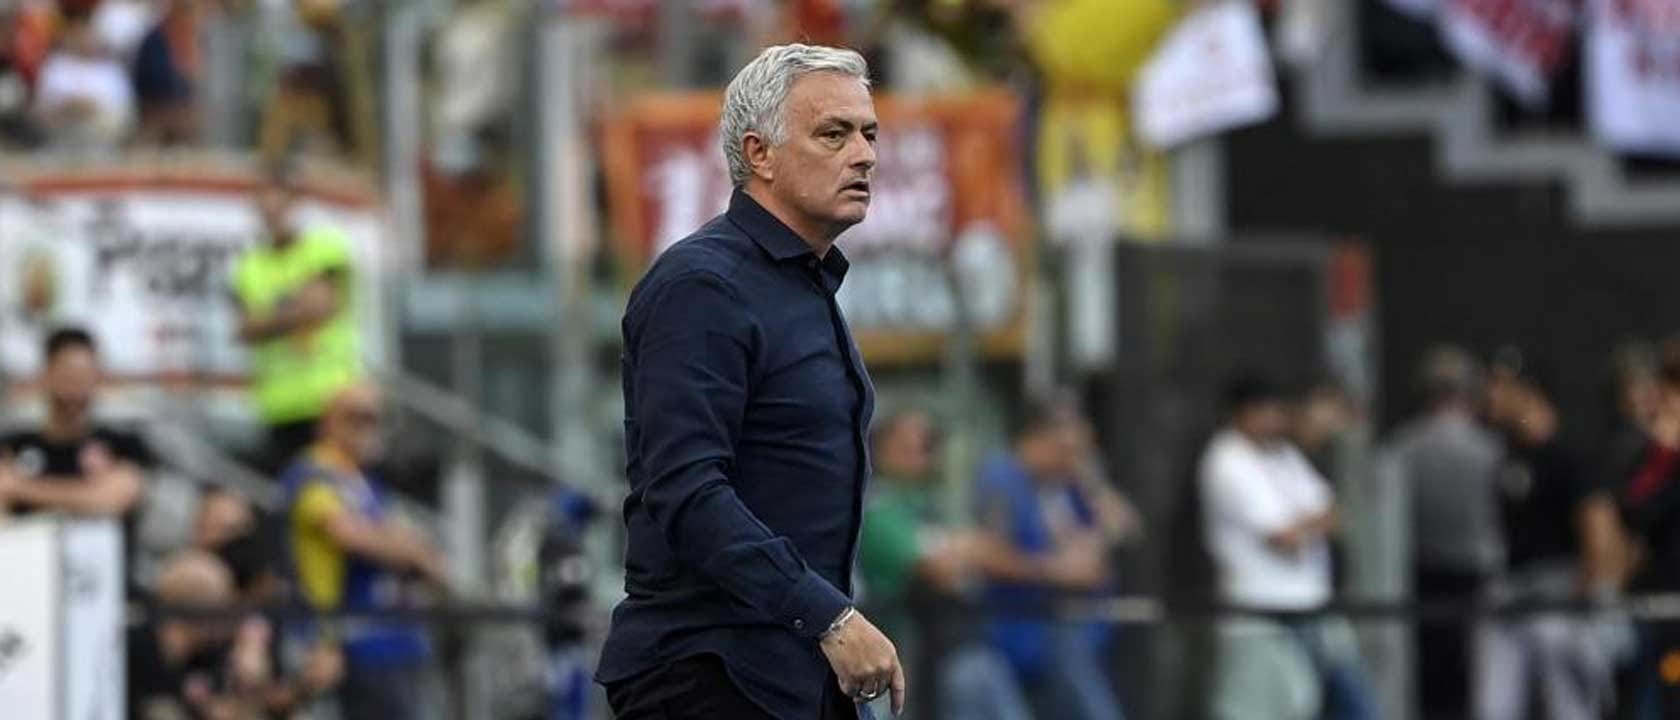 Os 'mind games' de José Mourinho: espicaçar jogadores passa pelo discurso